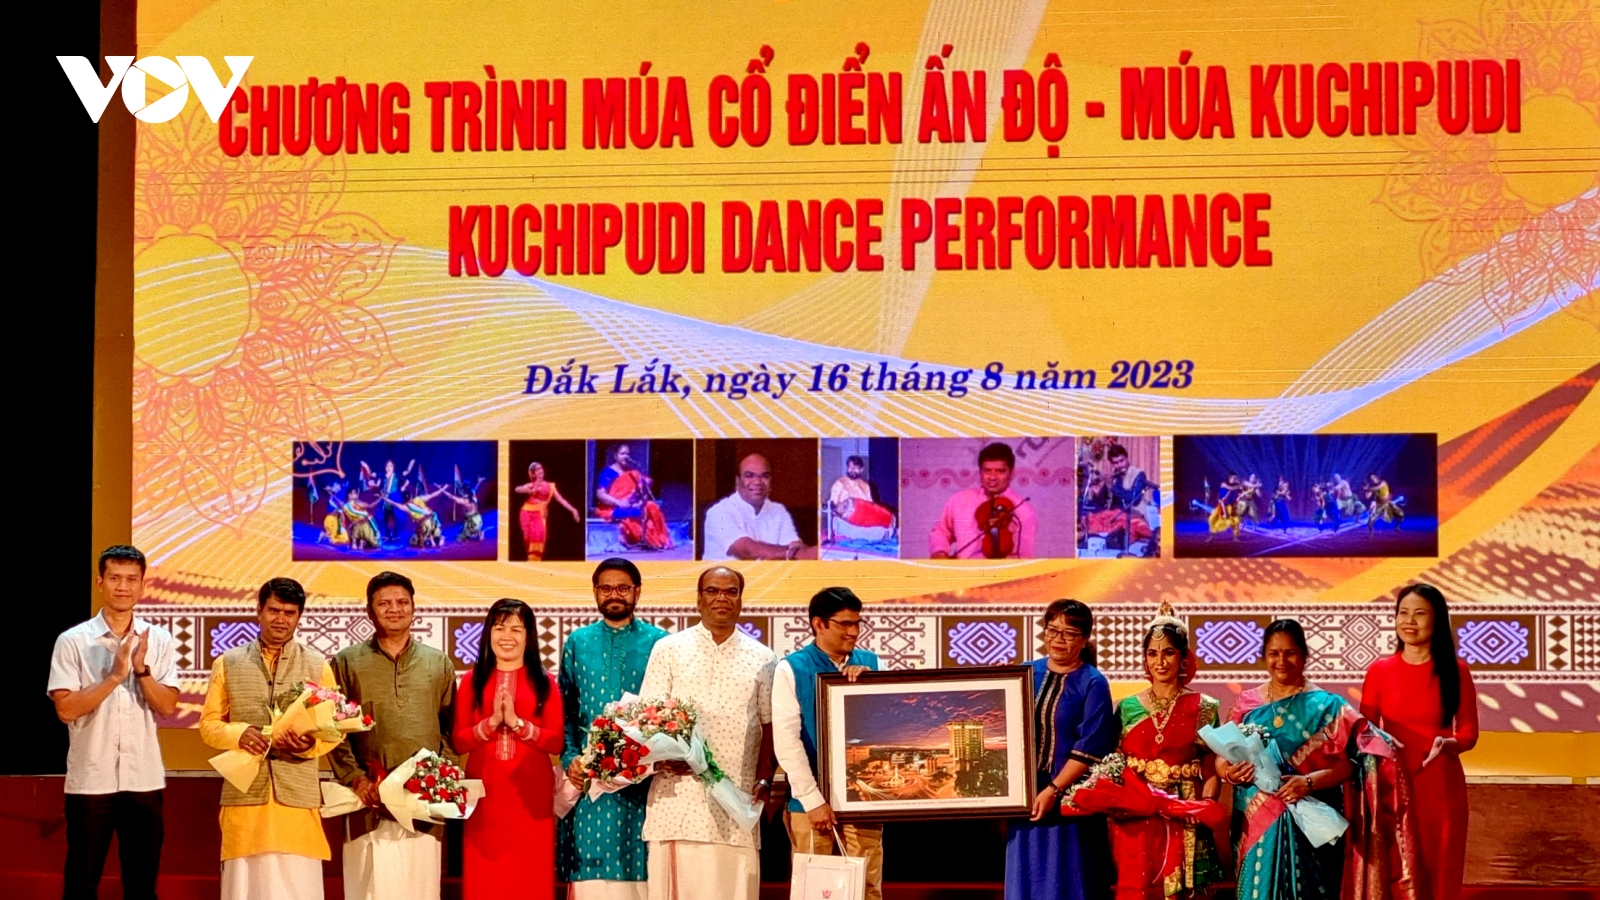 Múa cổ điển Ấn Độ Kuchipudi: "Xin chào Việt Nam" tại Đắk Lắk